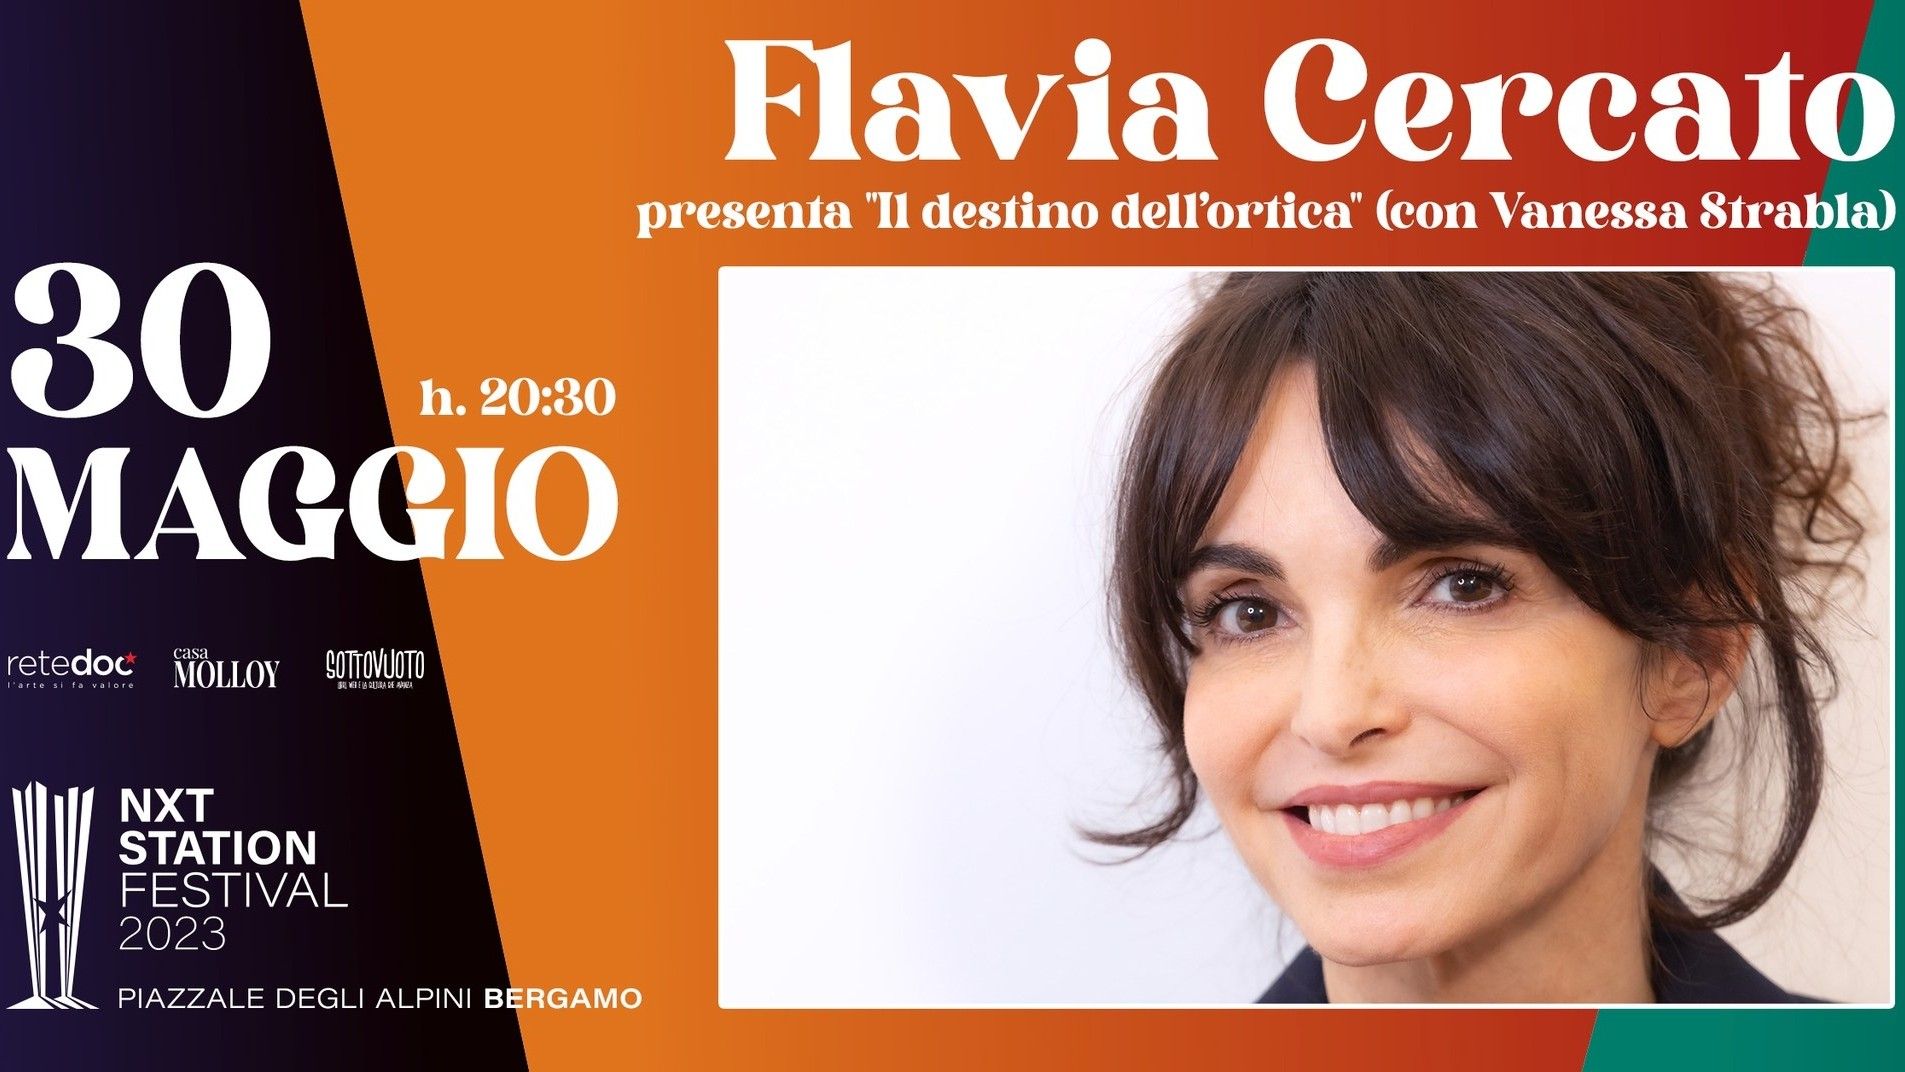 Flavia Cercato presenta "Il destino dell'ortica"